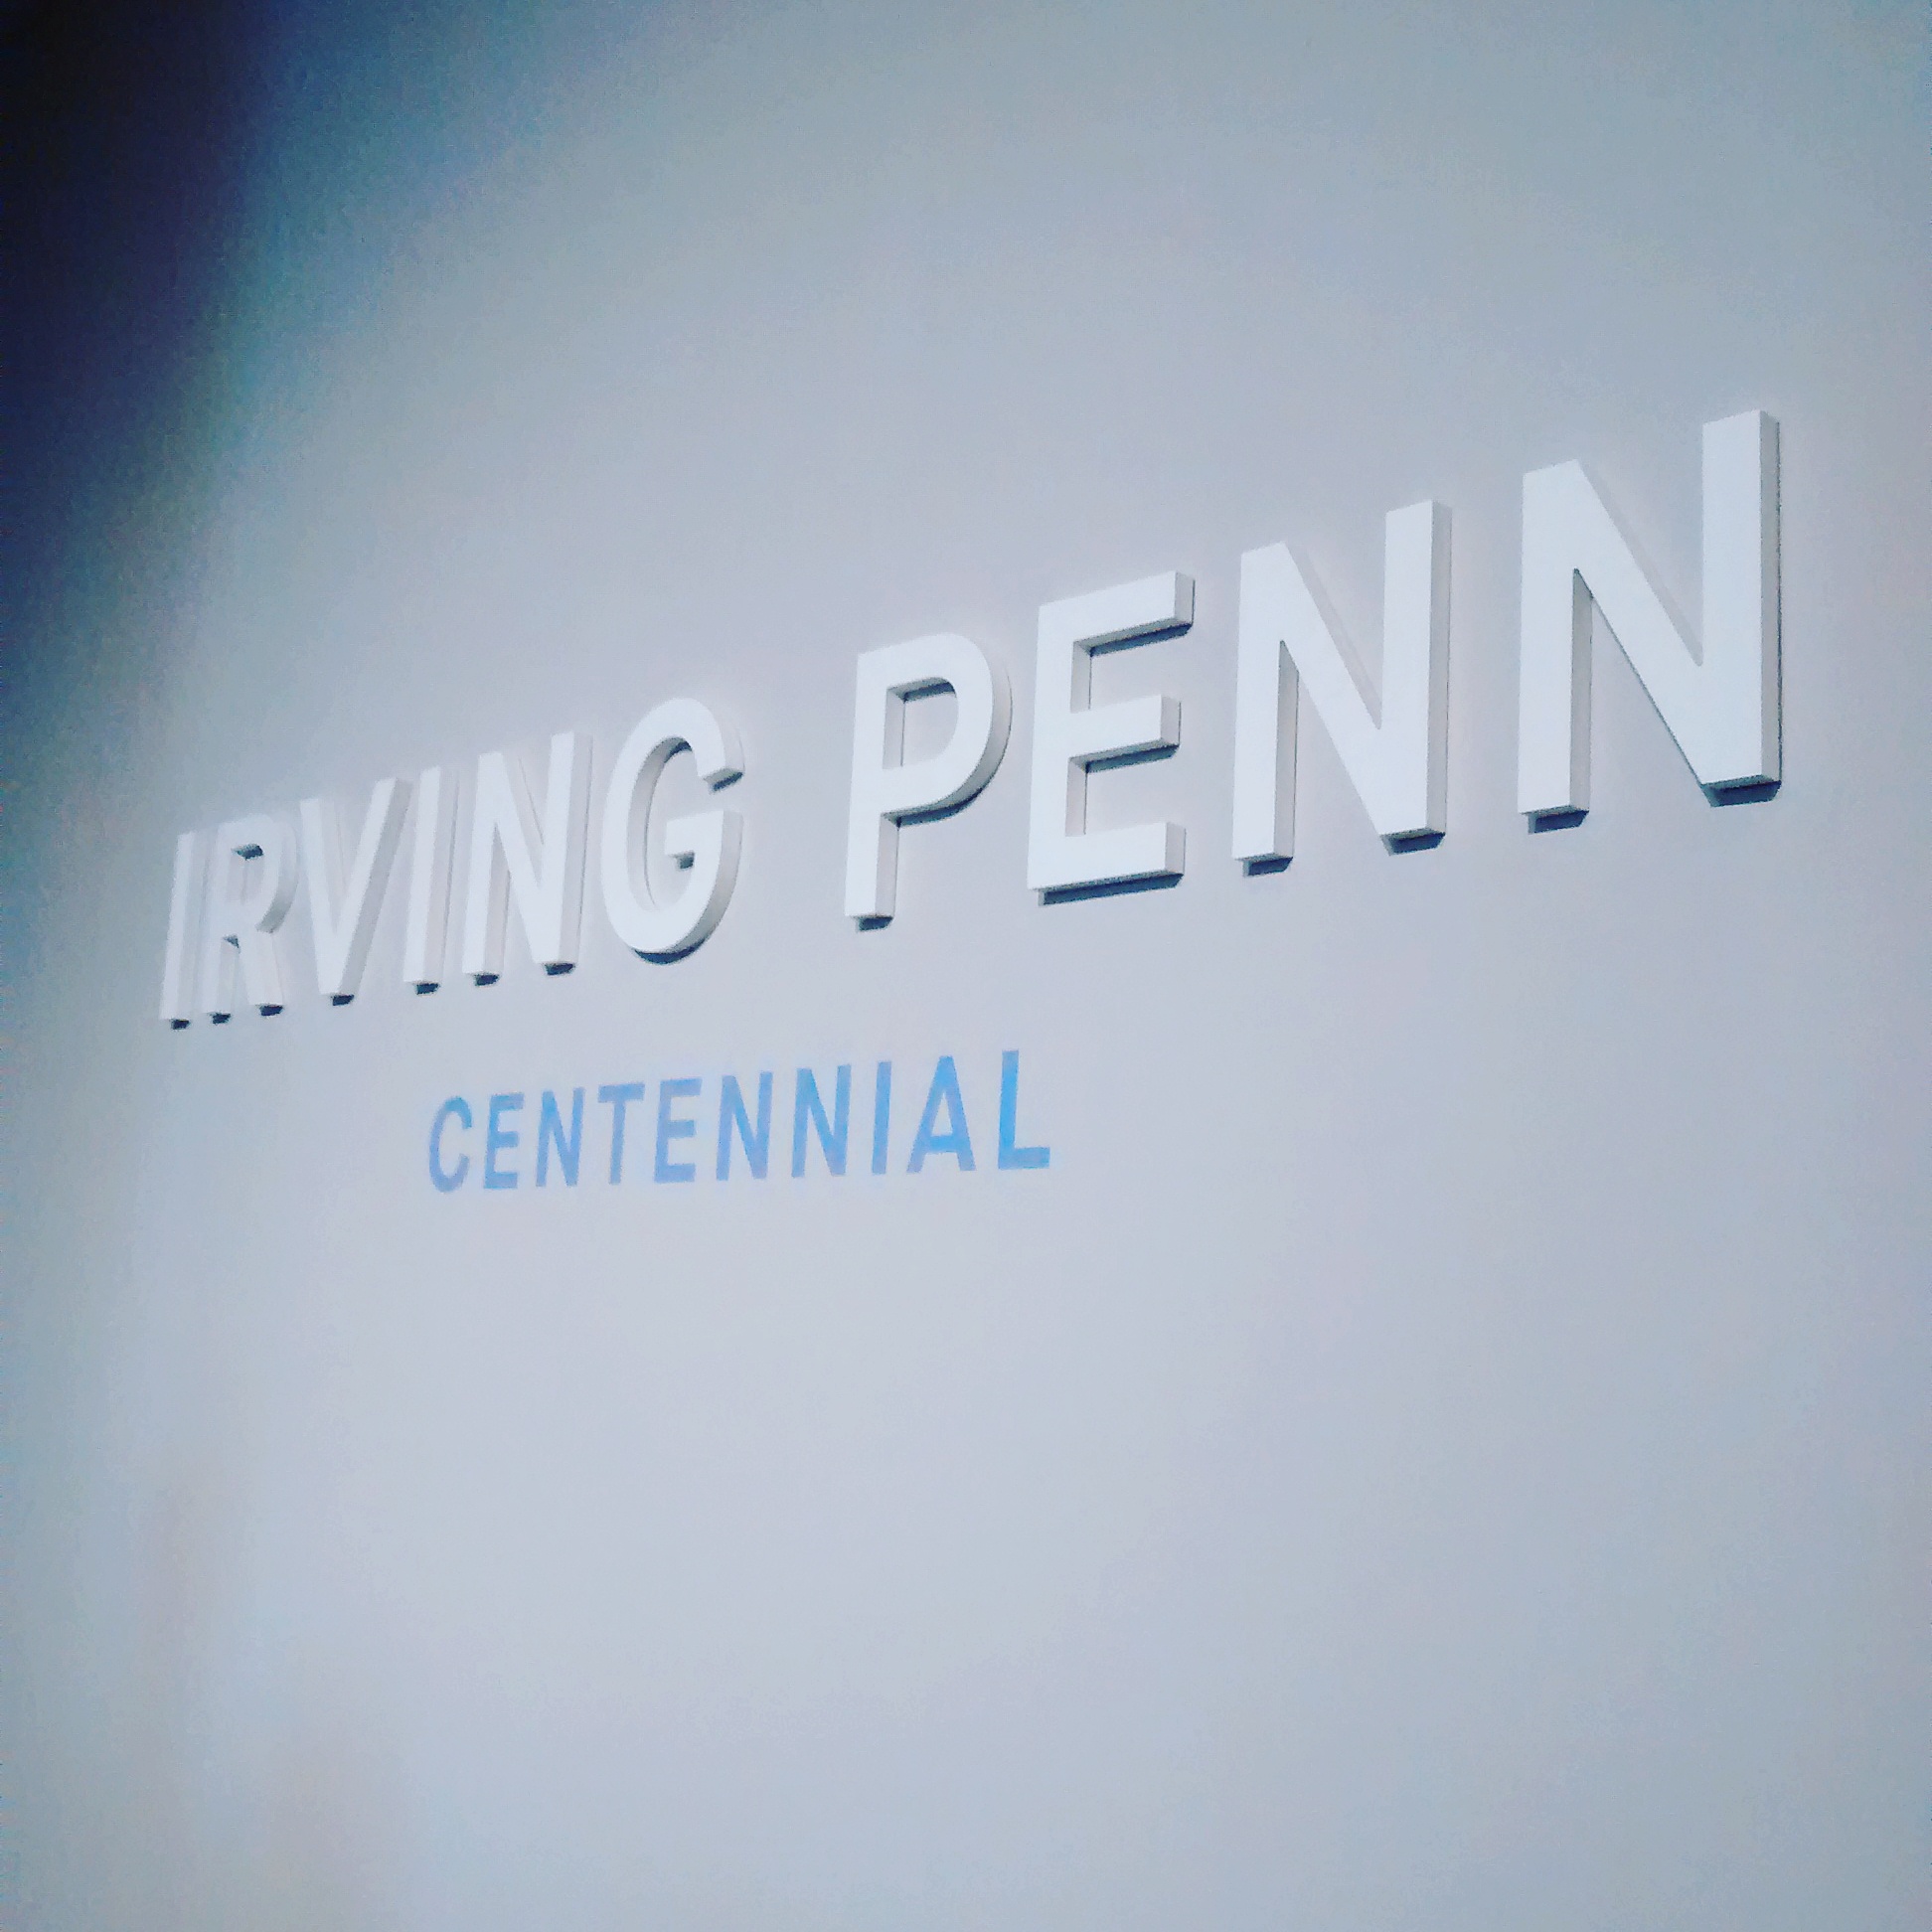 Irving Penn: Centennial at The Metropolitan Museum of Art